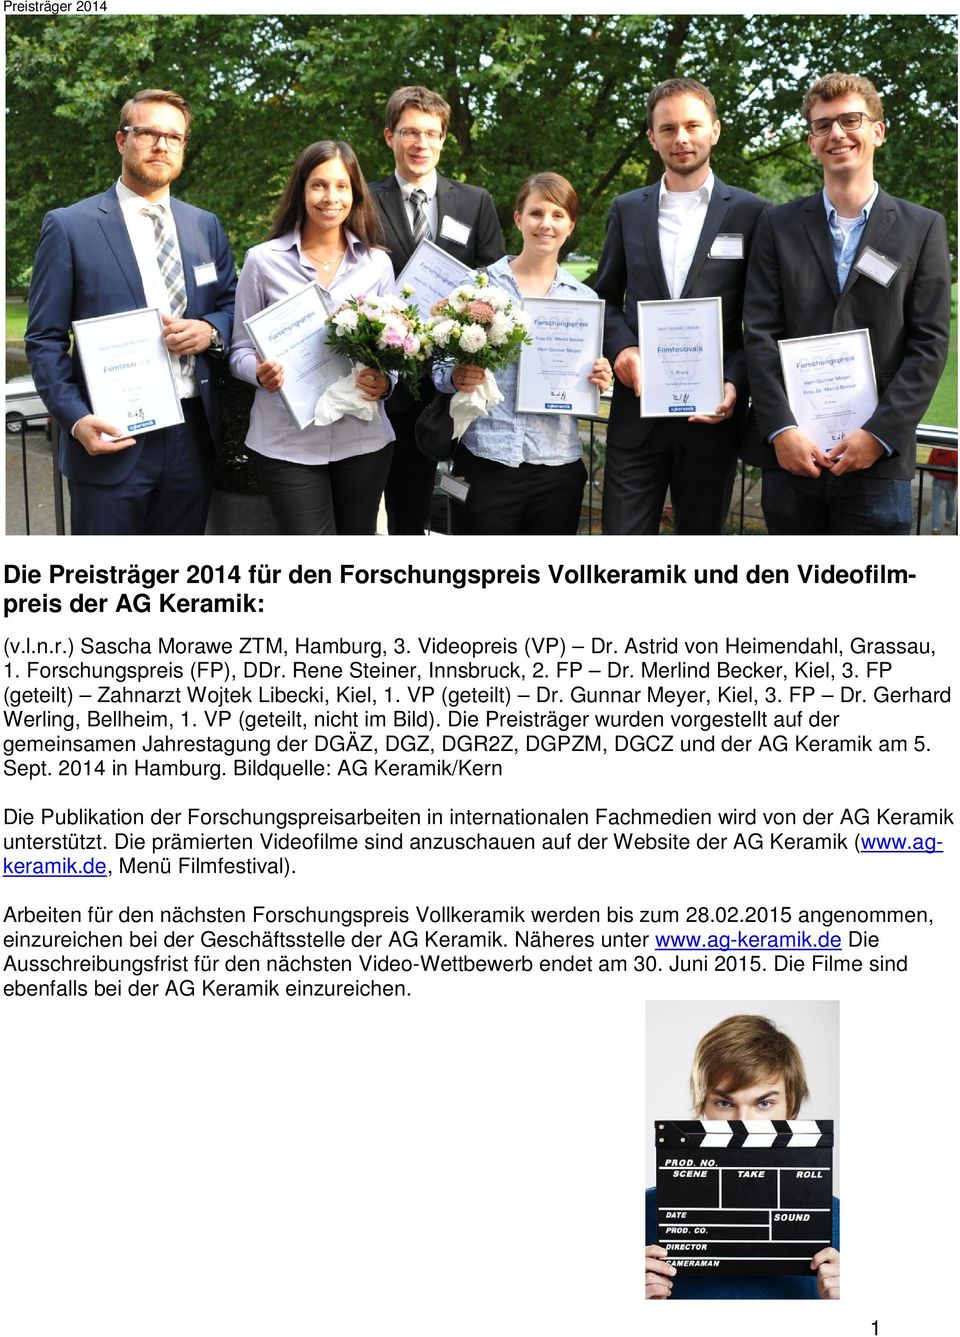 Gunnar Meyer, Kiel, 3. FP Dr. Gerhard Werling, Bellheim, 1. VP (geteilt, nicht im Bild).